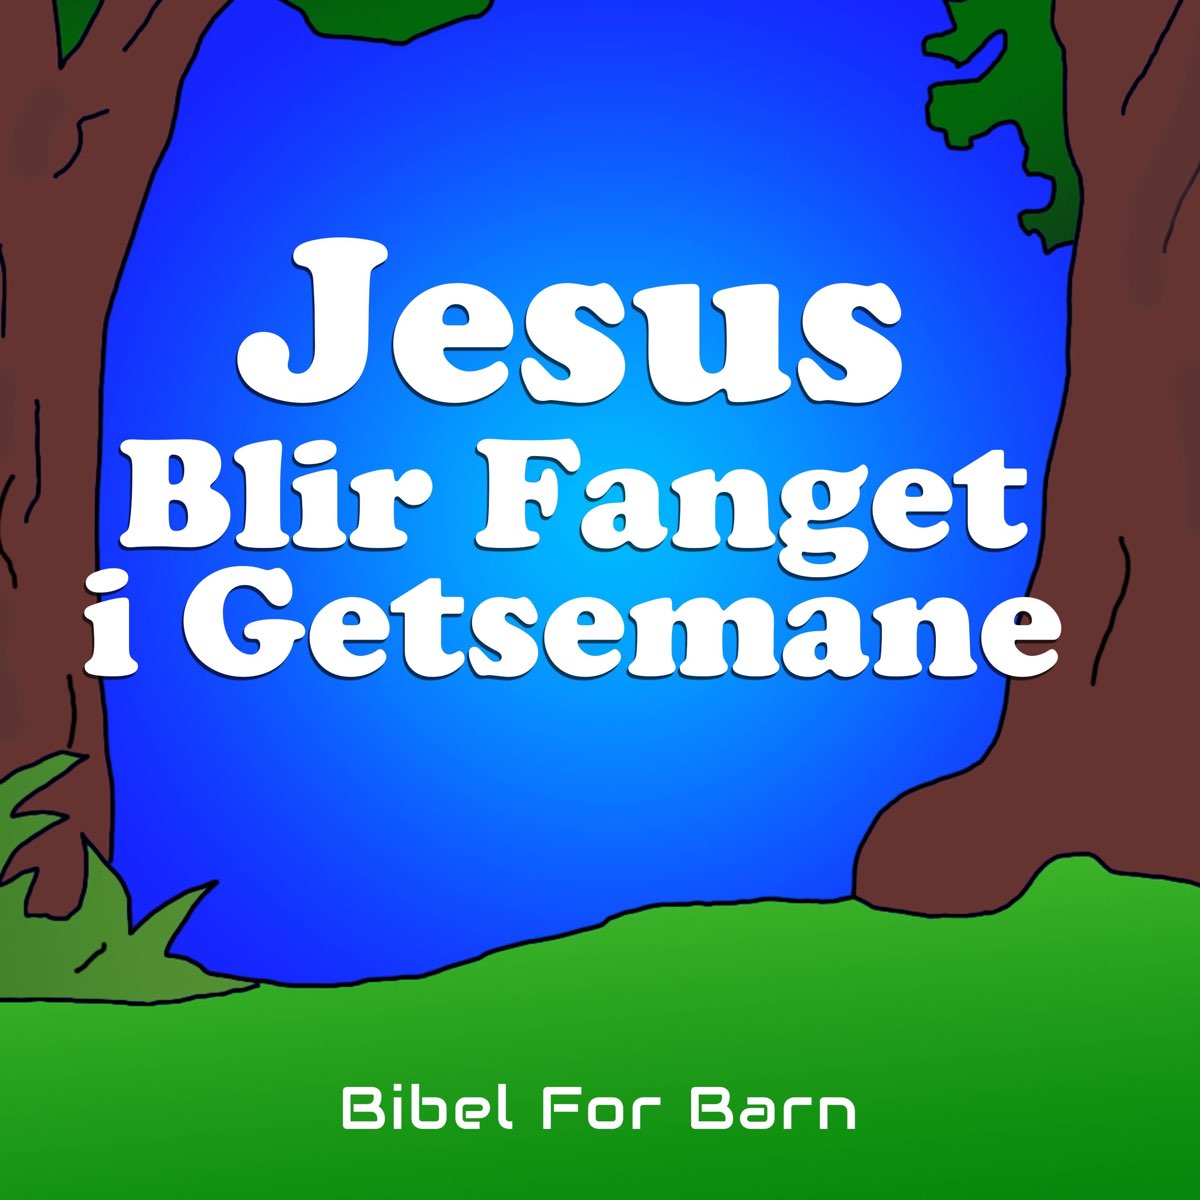 Jesus Blir Fanget I Getsemane - Single by Bibel For Barn on Apple Music